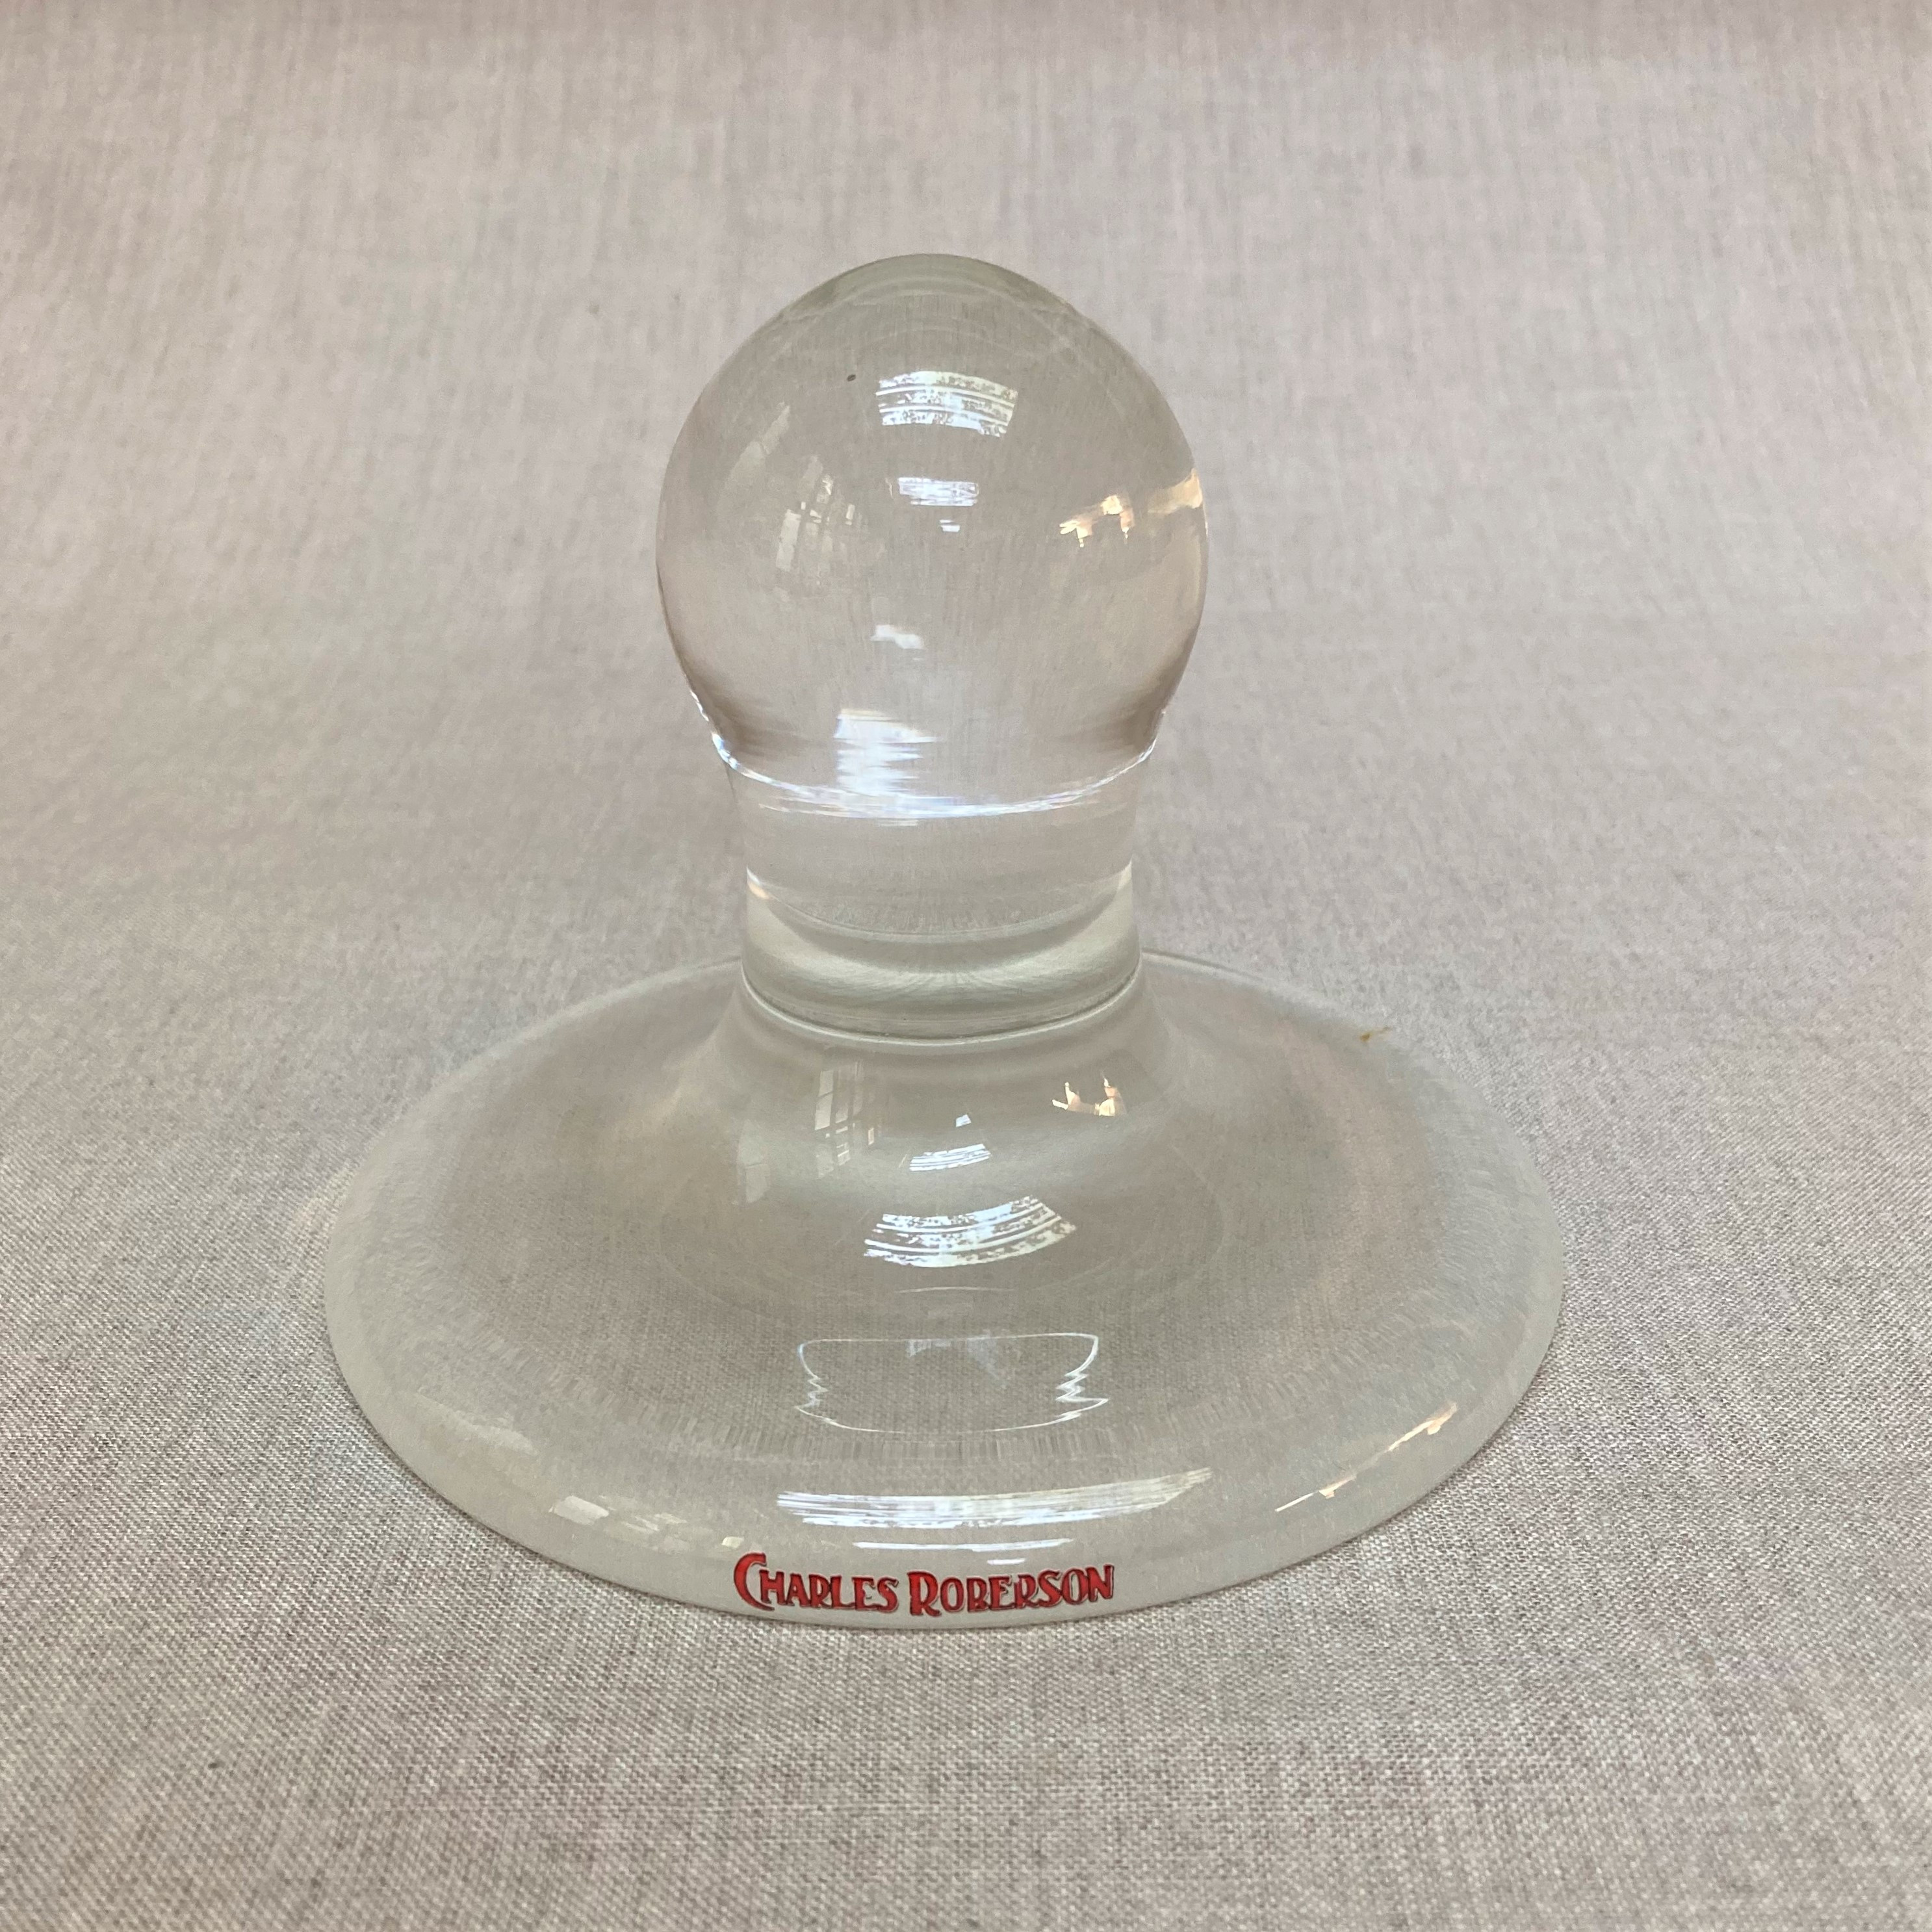 Glass Muller - Resin Pigment Making Equipment